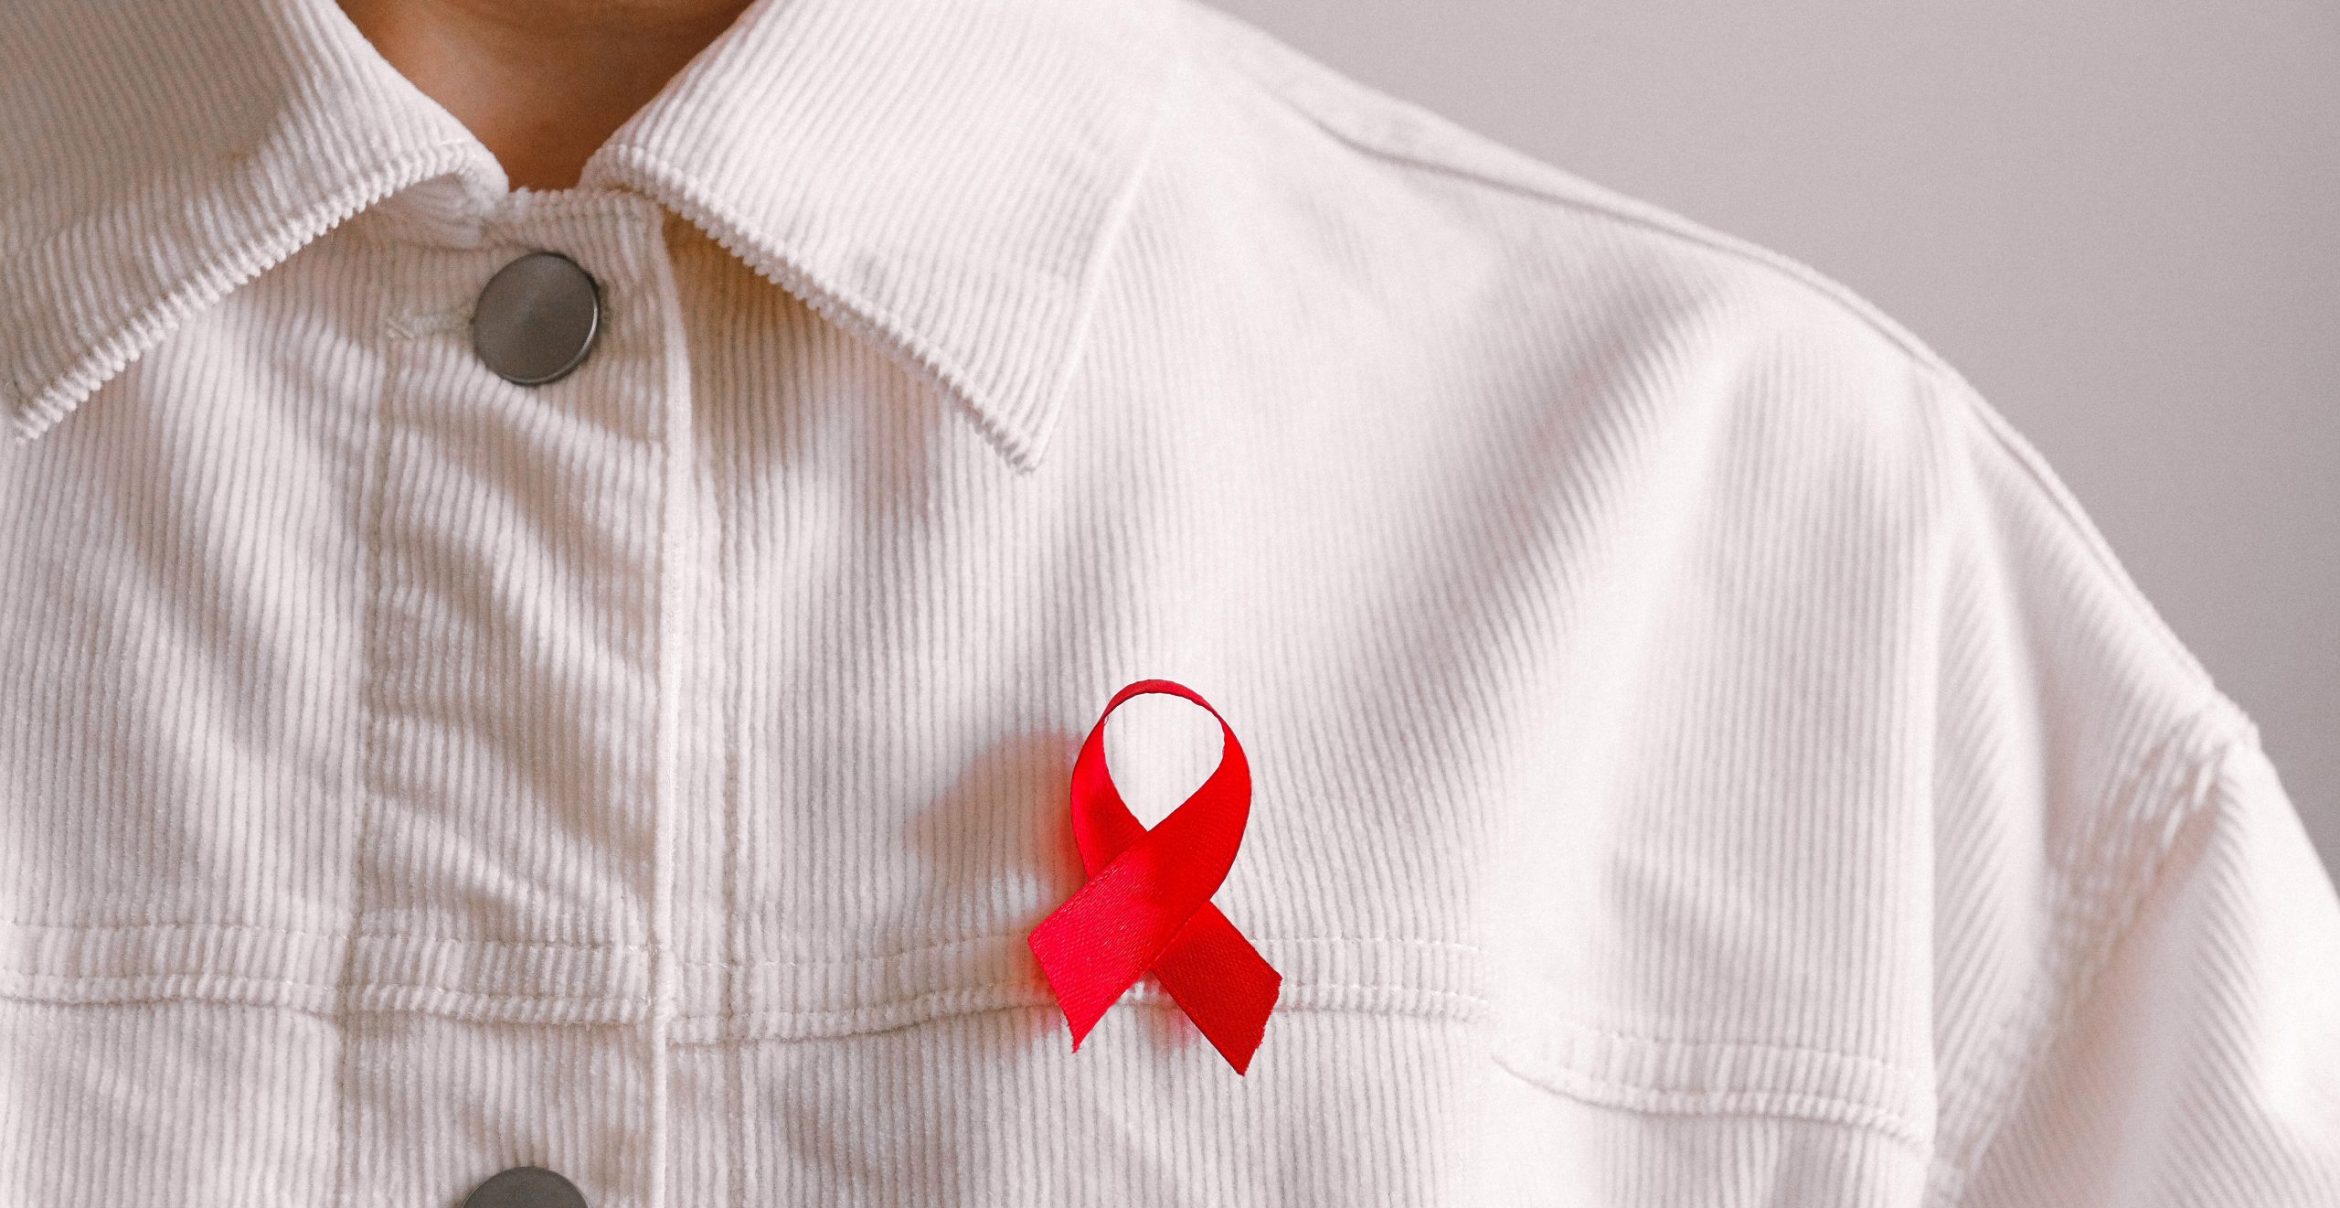 Zum Welt-Aids-Tag: Warum die Ohhh! Foundation HIV umbenennen möchte